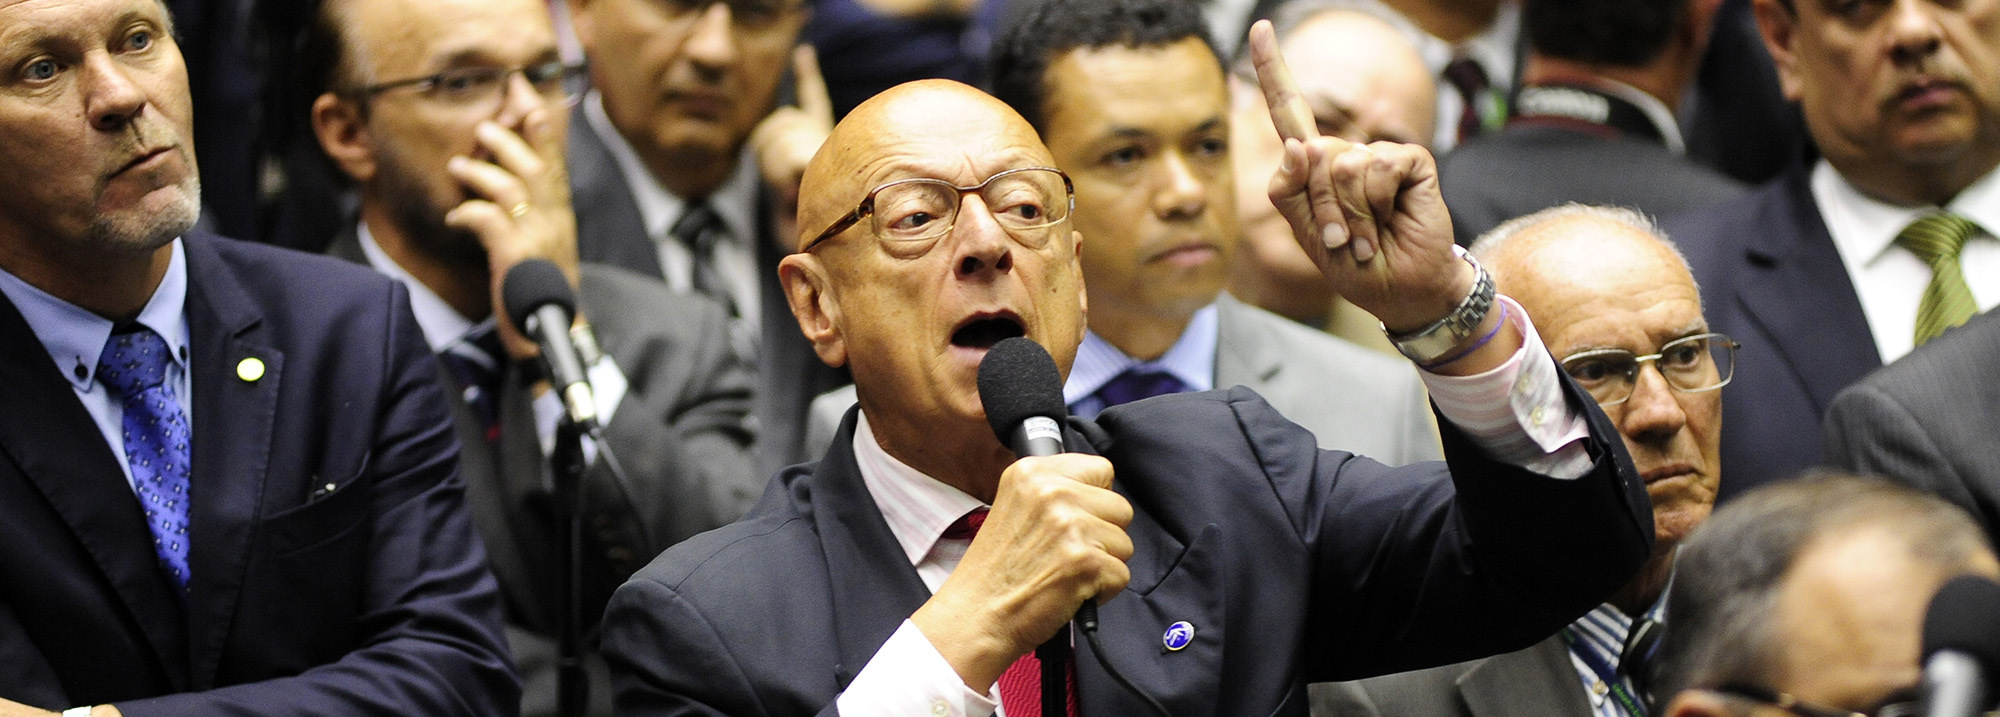 DADA LARGADA DA SUCESSÃO ESTADUAL –  Amin lançado pré-candidato a governador.